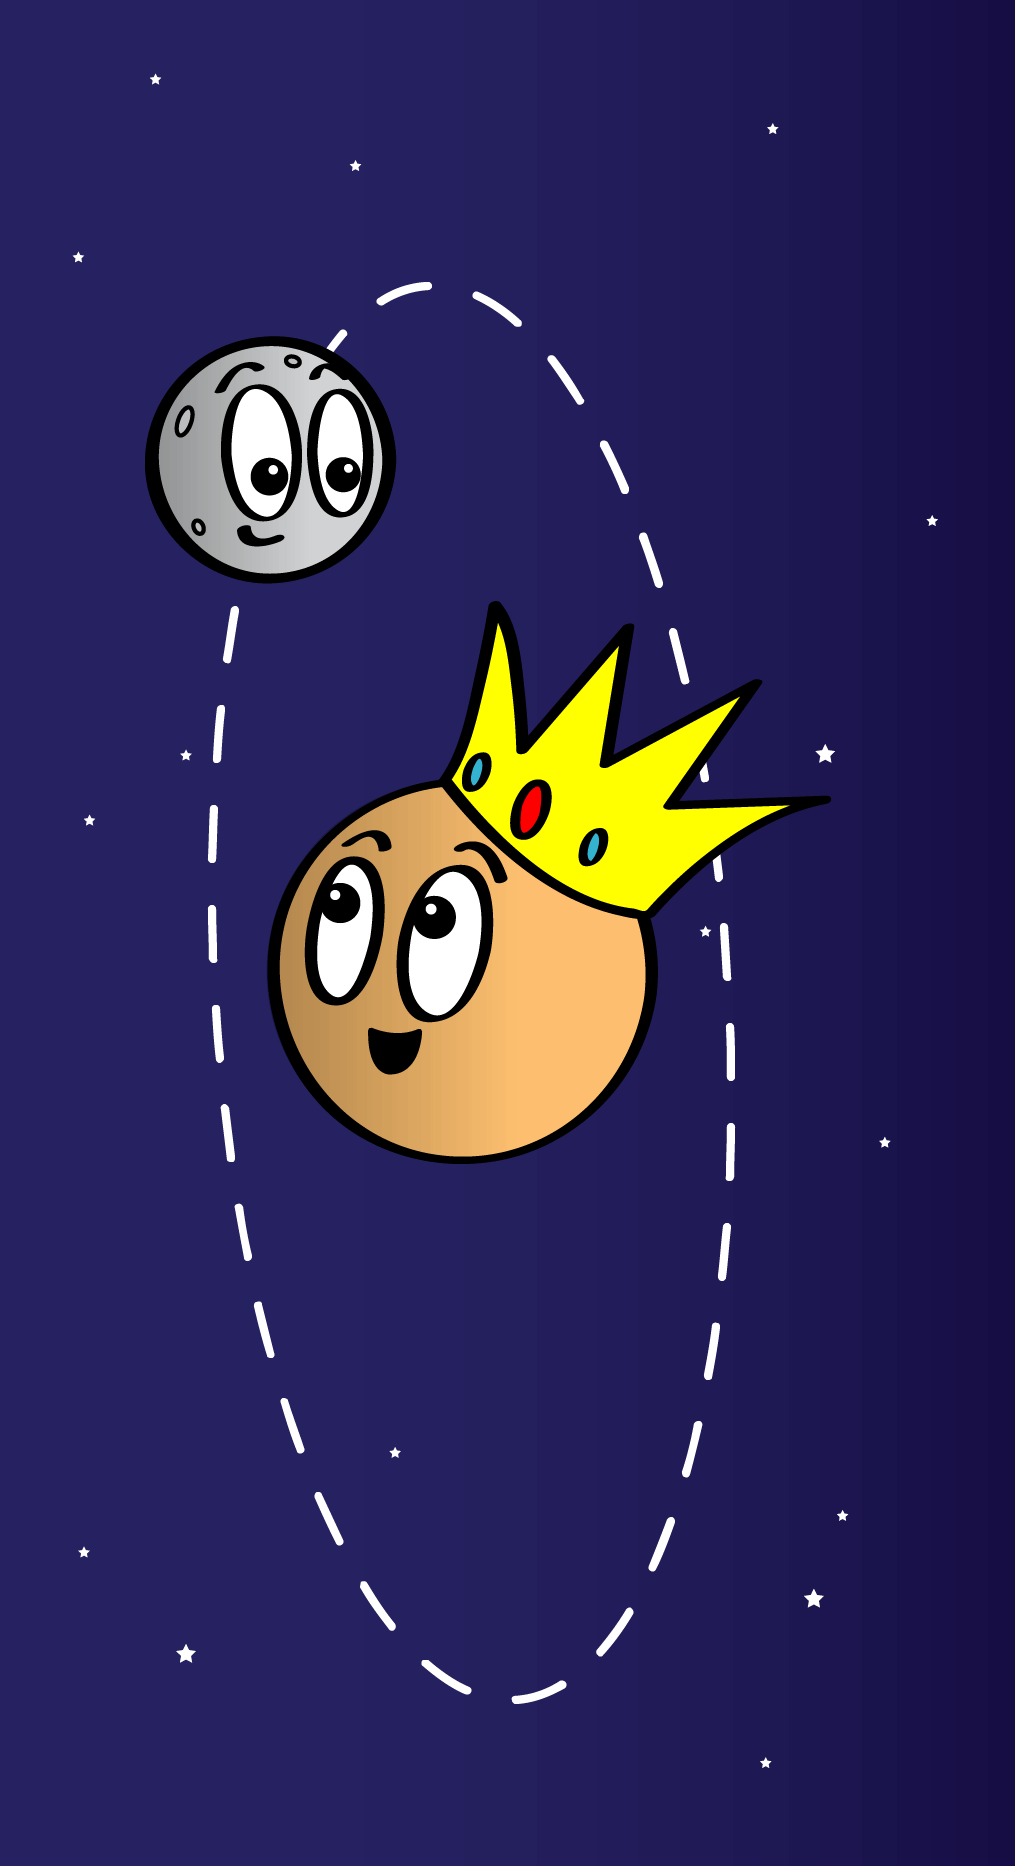 Un Plutón naranja le sonríe a un pequeño Caronte gris. Caronte se sienta sobre una línea punteada ovalada que representa su órbita alrededor de Plutón y le devuelve la sonrisa. Plutón lleva una corona amarilla con tres piedras: una roja y dos verdes.